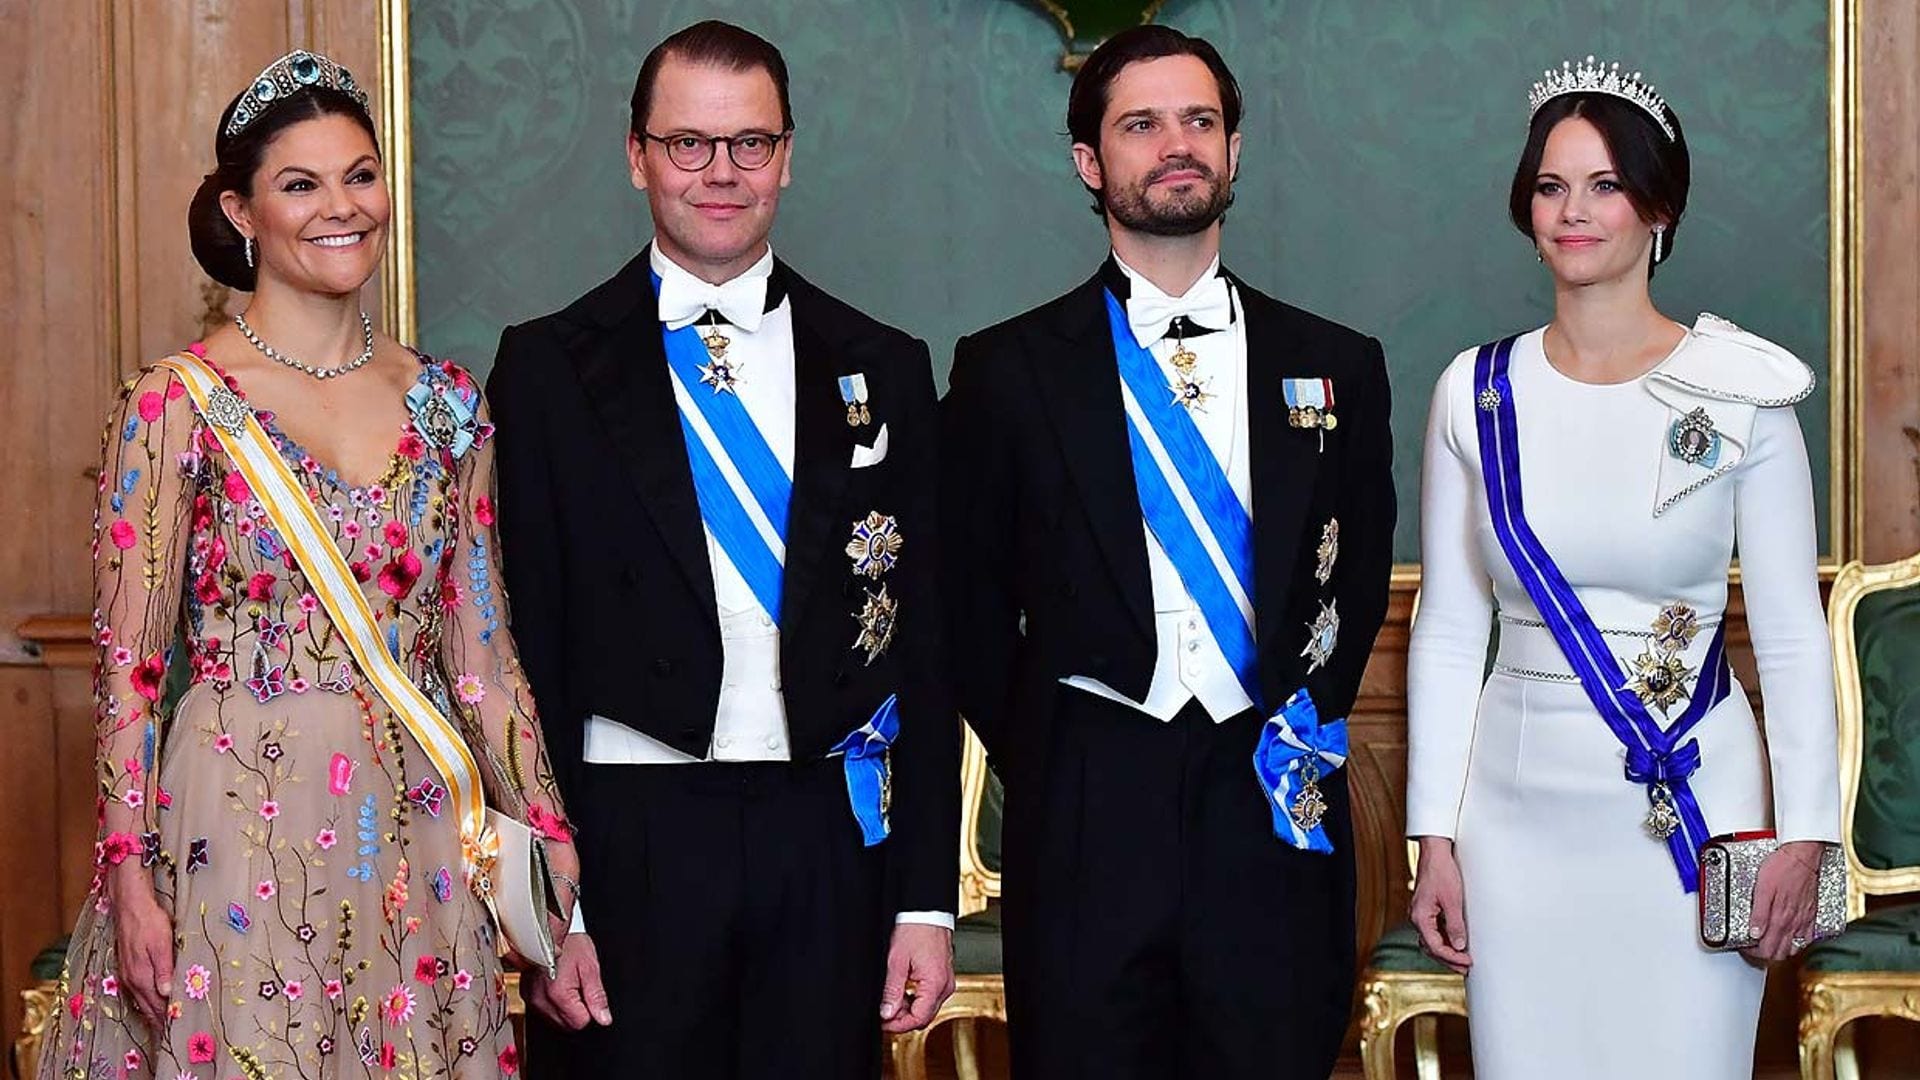 La Familia Real sueca luce las condecoraciones otorgadas por Felipe VI en su viaje de Estado